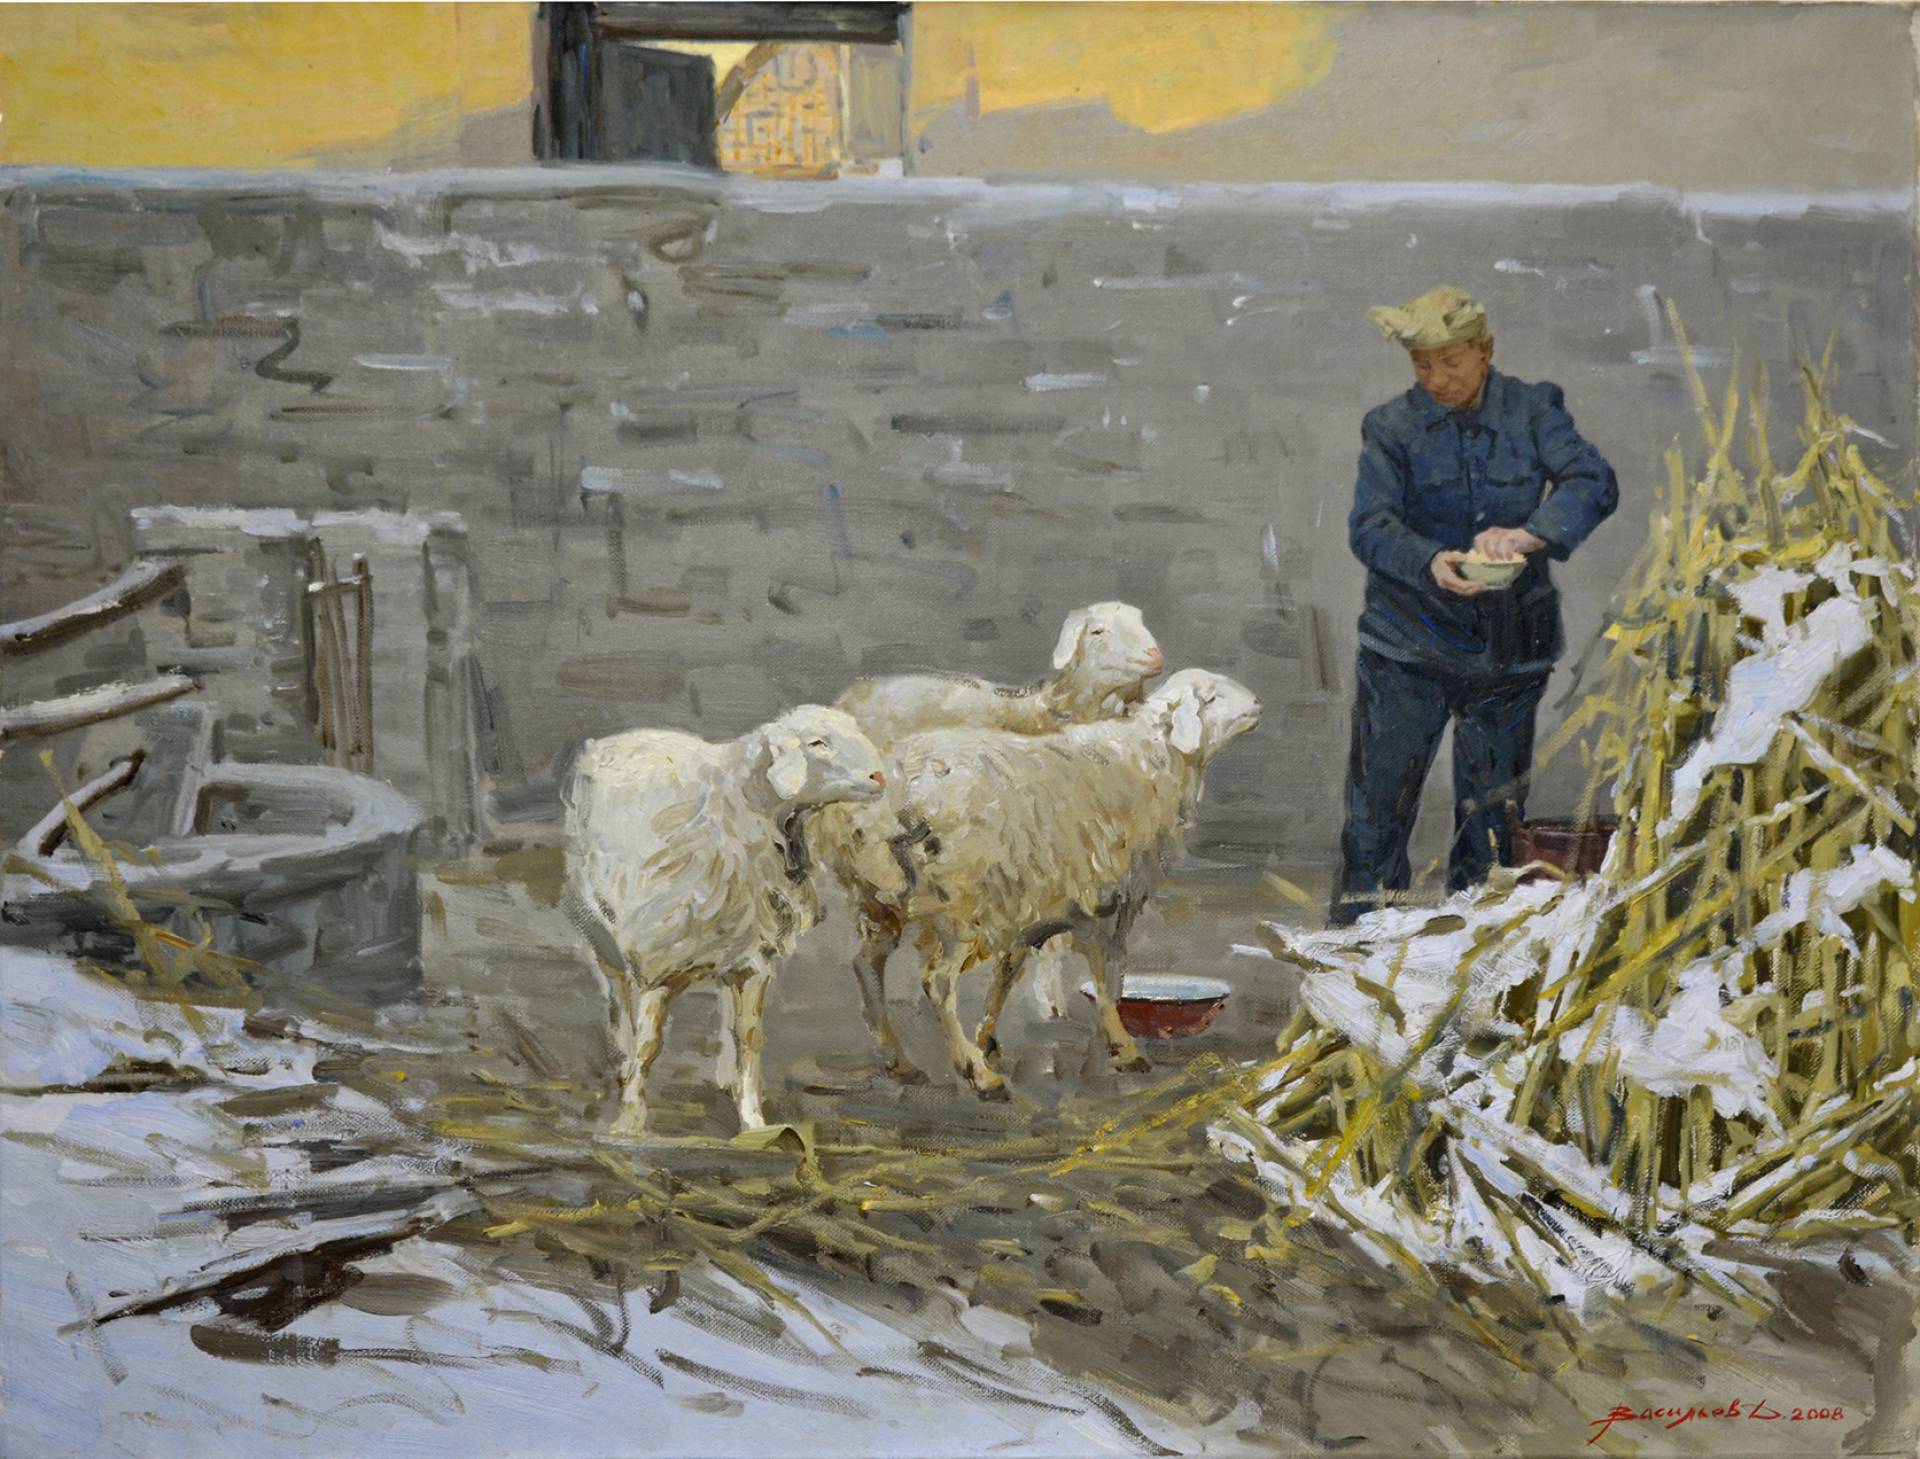 Morning - 1, Dmitry Vasiliev, Buy the painting Oil